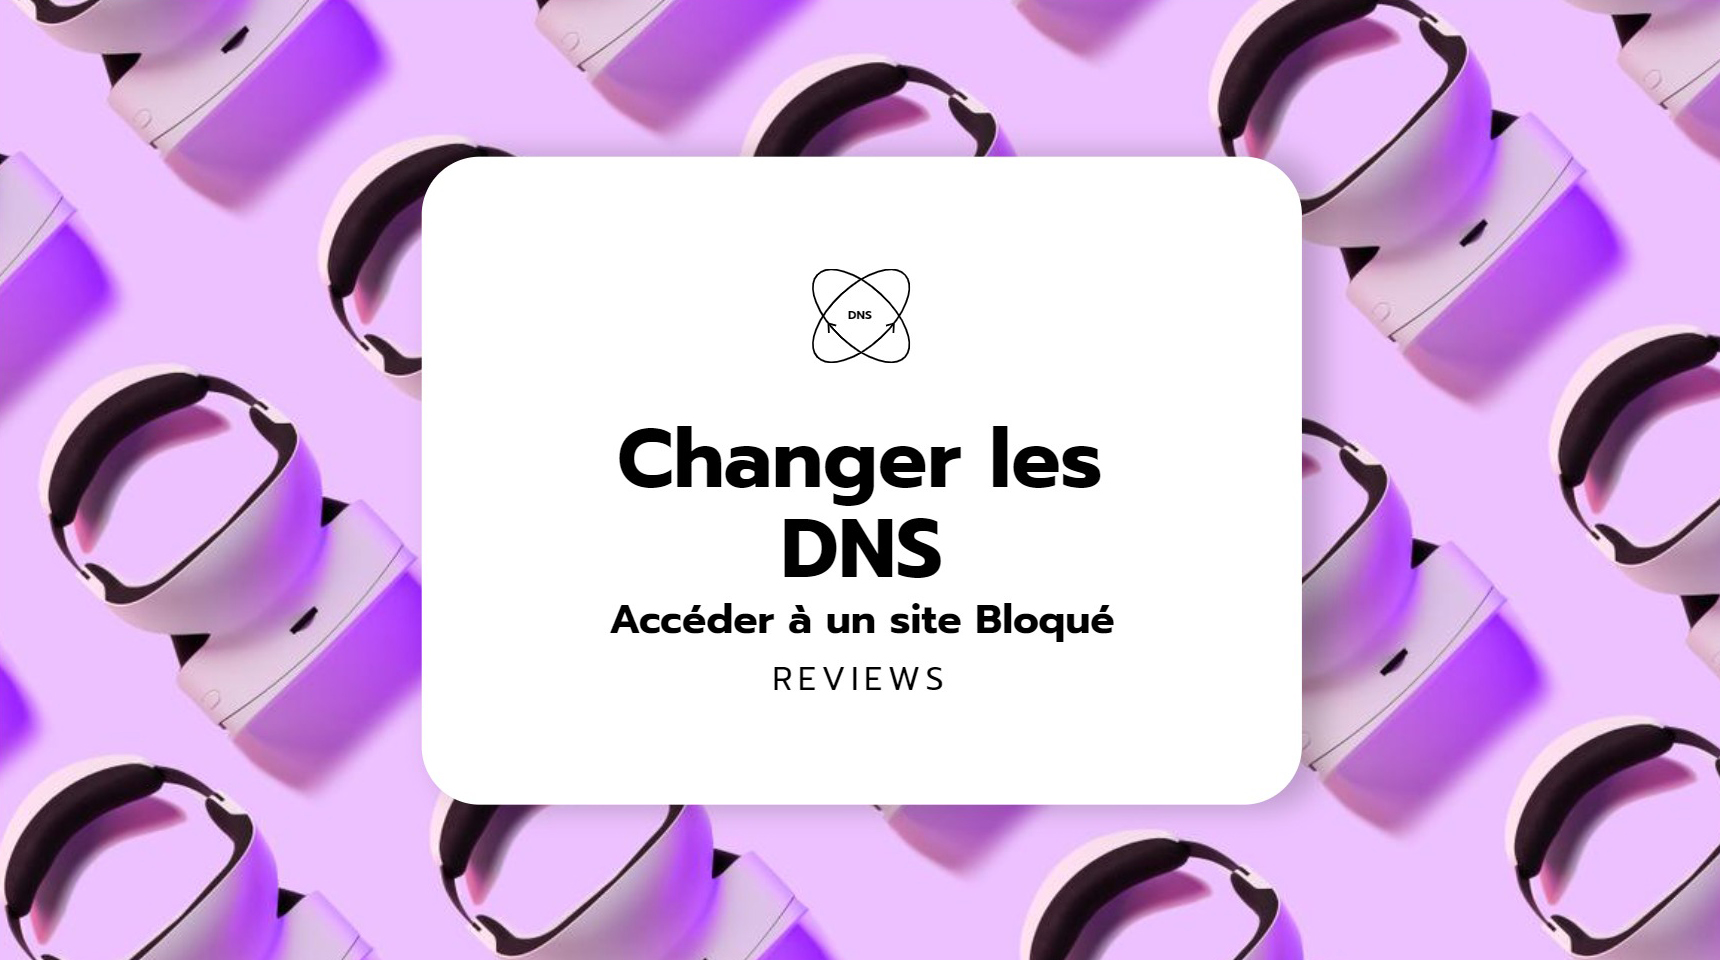 Guide : Changer le DNS pour Accéder à un site Bloqué